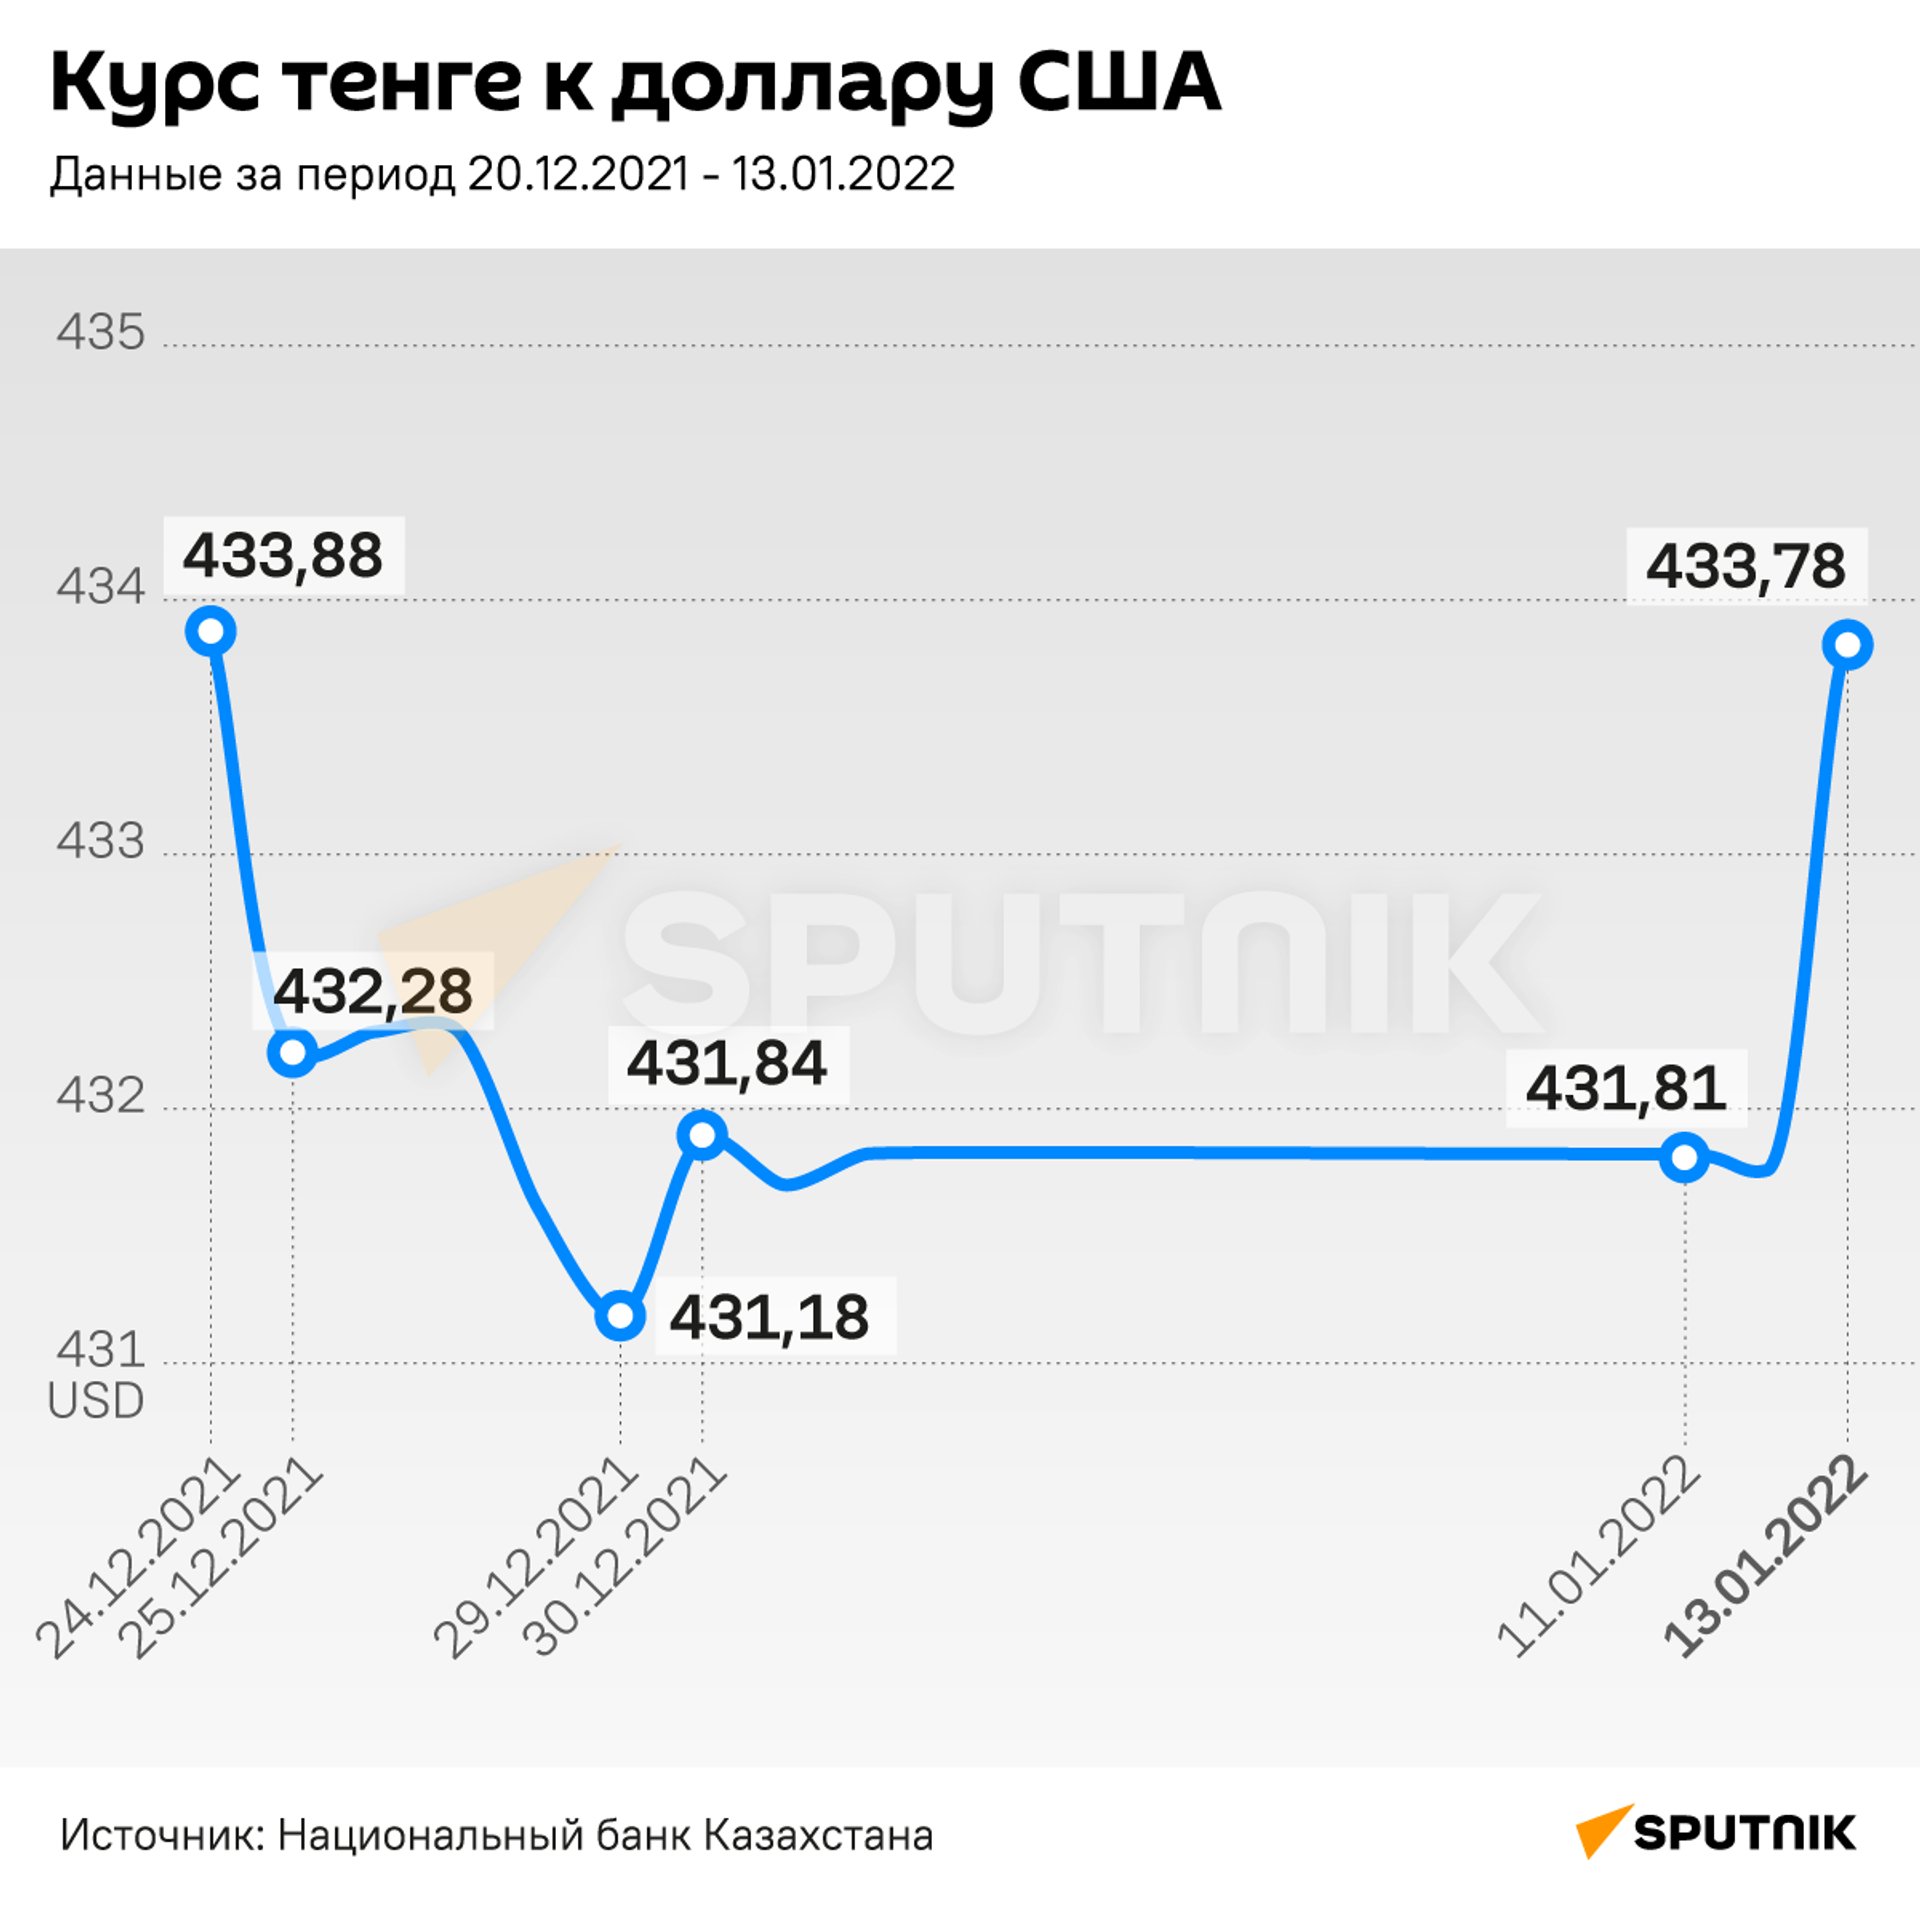 Колебания курса тенге в декабре 2021 - январе 2022 года - Sputnik Казахстан, 1920, 01.02.2022